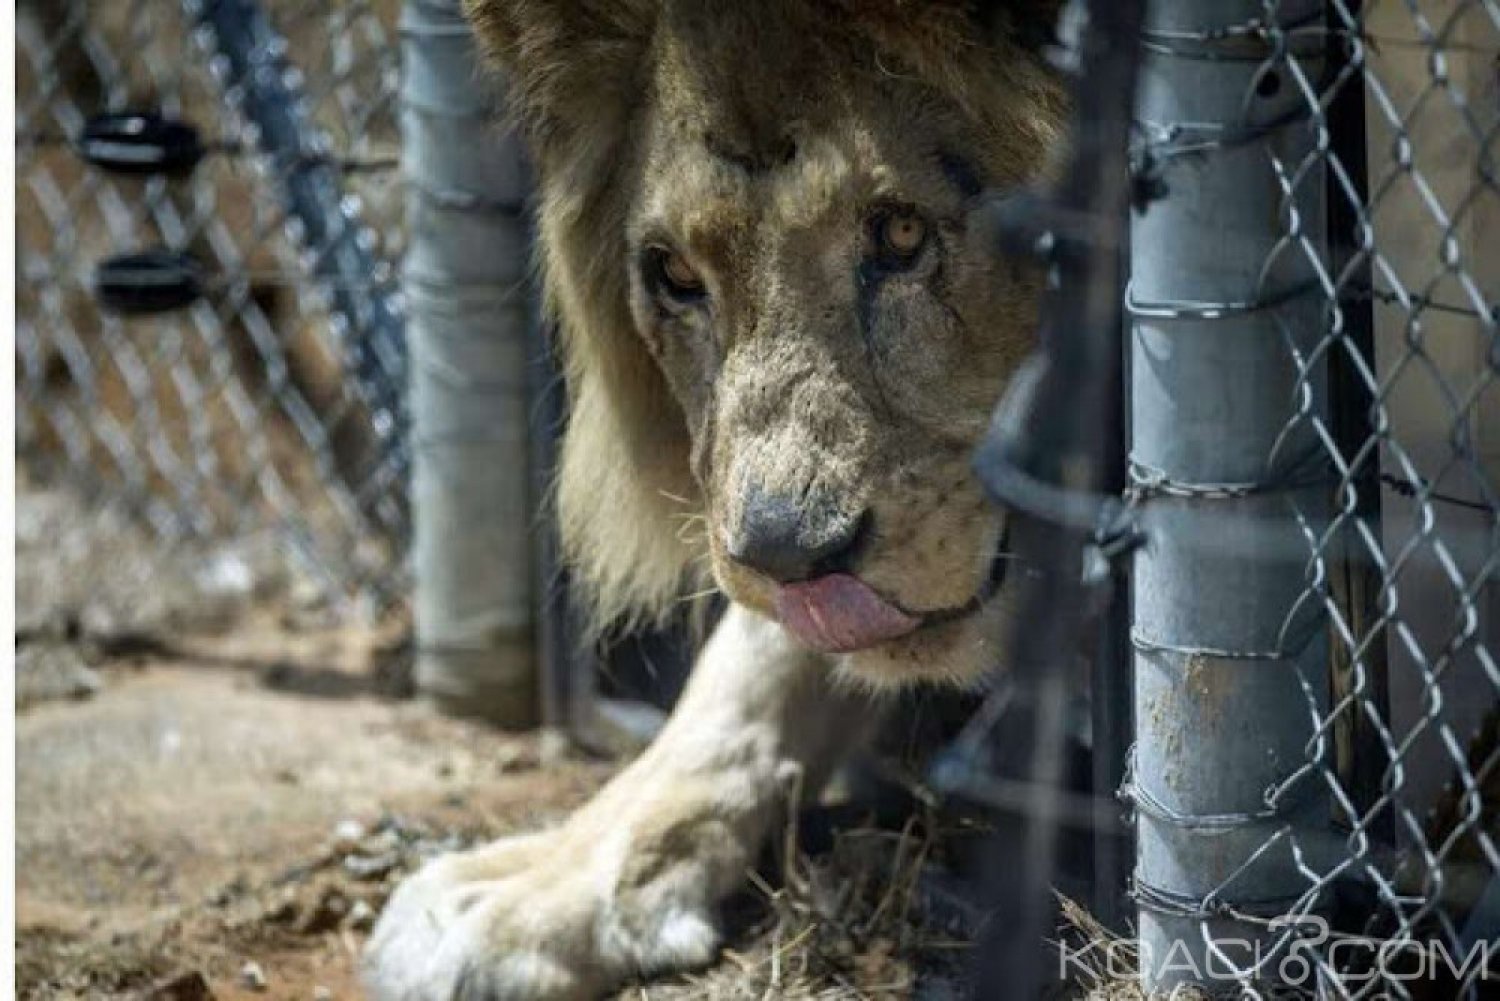 Afrique du Sud:  Écrasé par un éléphant, un braconnier mangé par des lions dans un parc